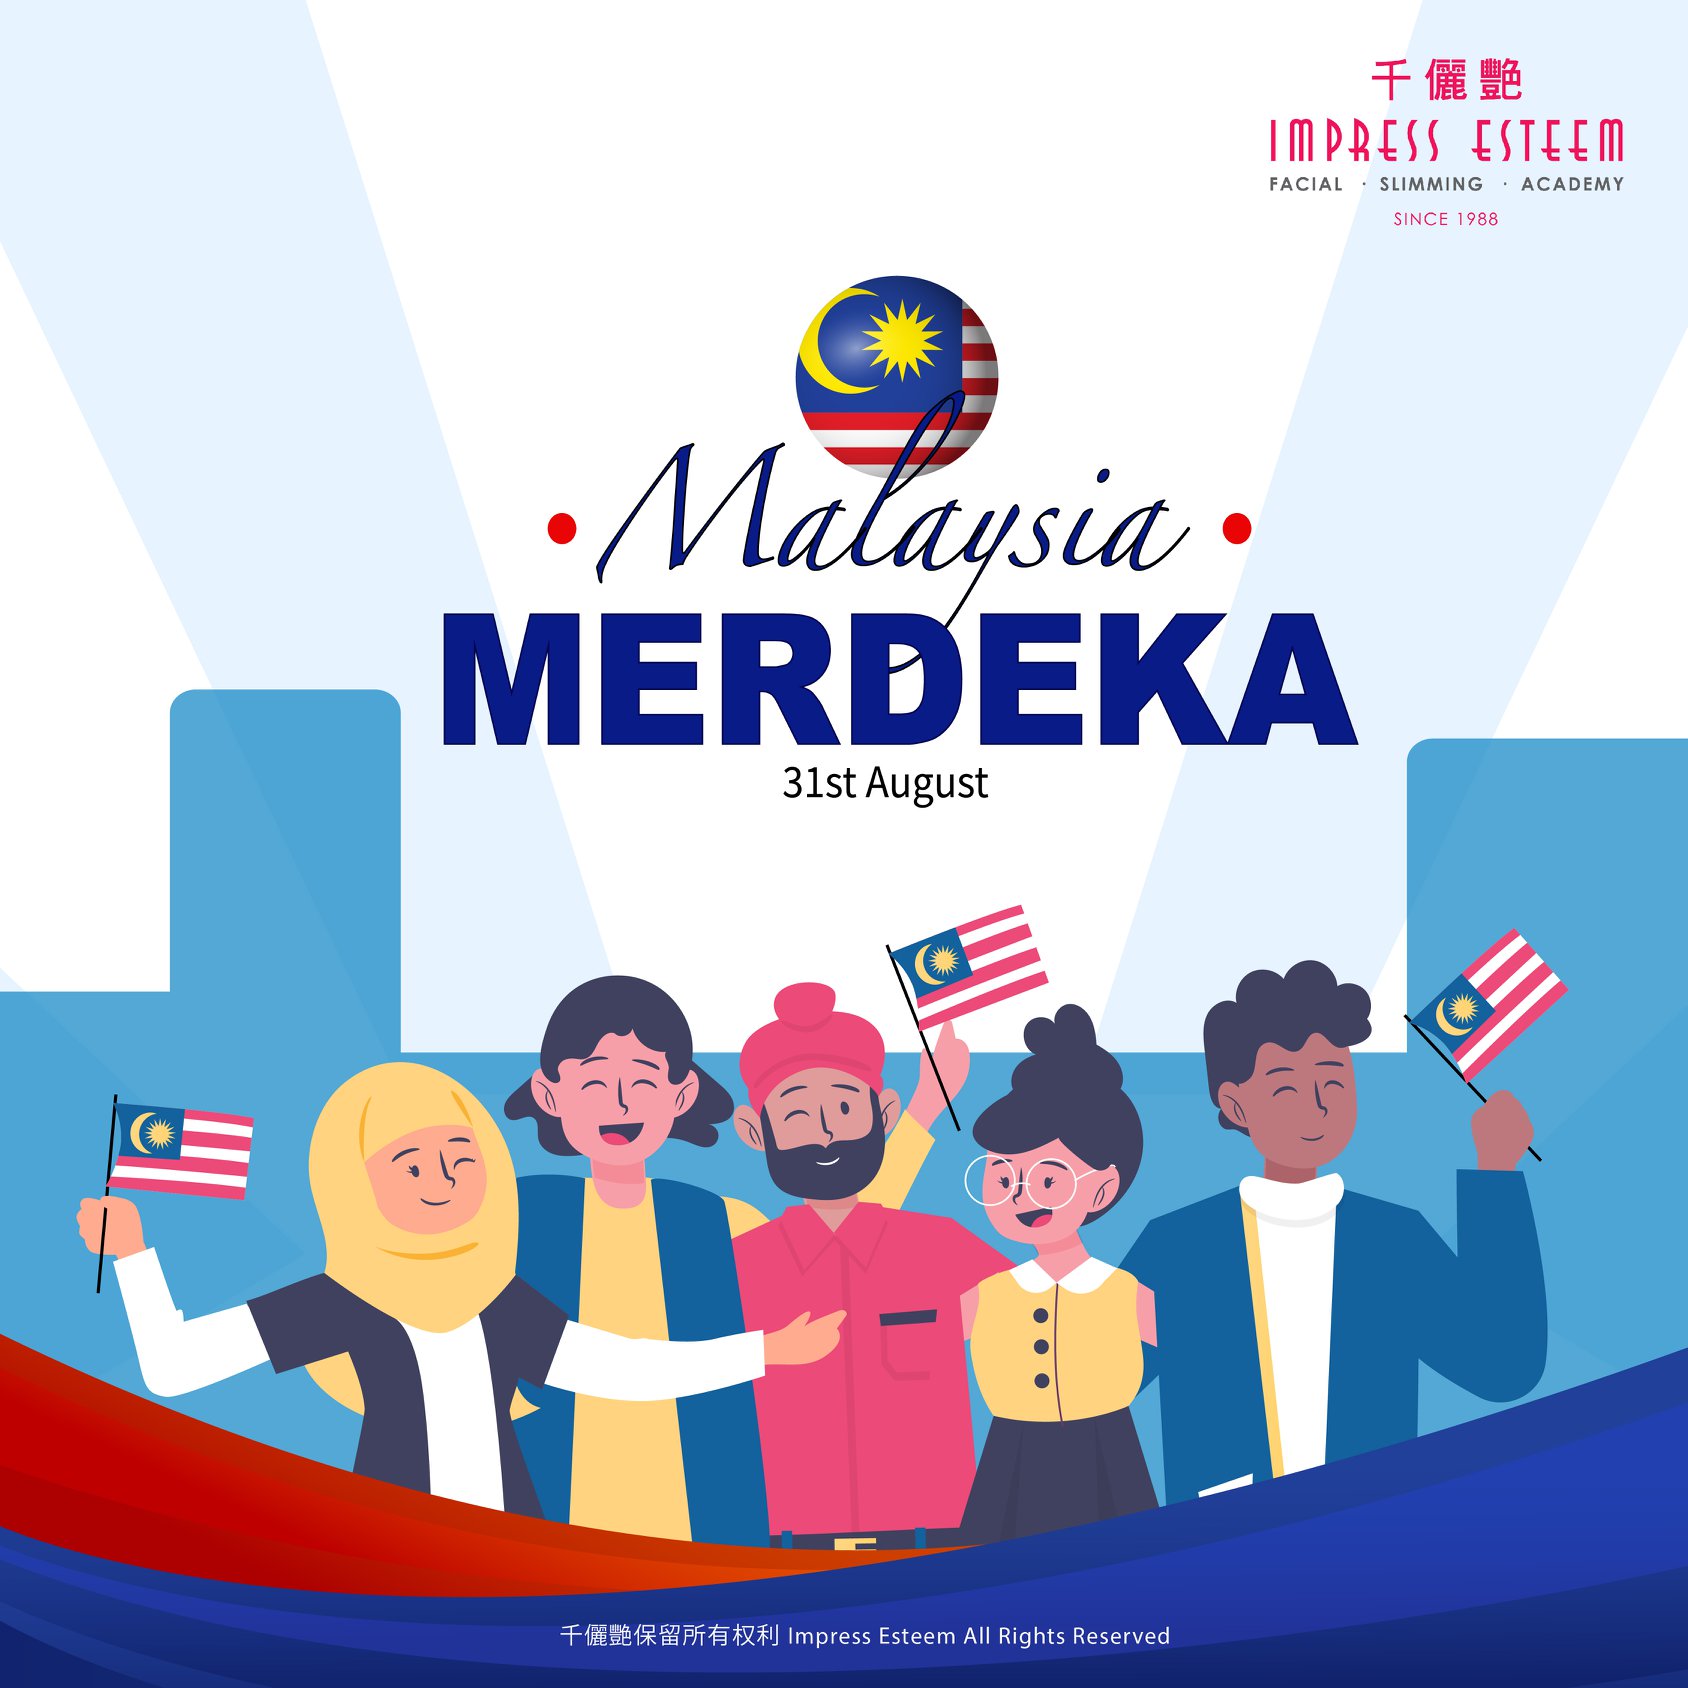 Happy Merdeka Day to Malaysia